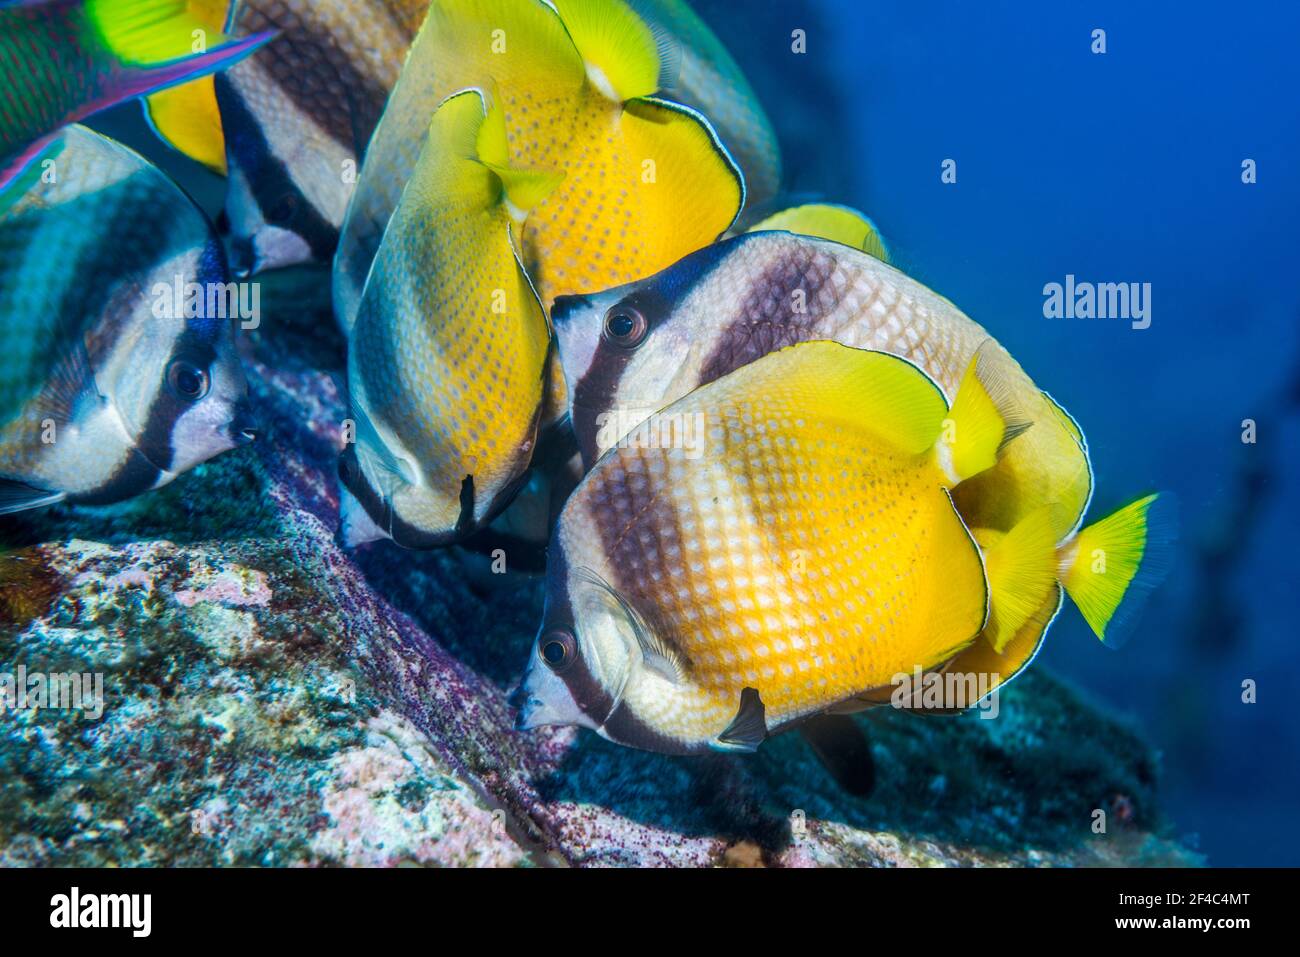 Klein's butterflyfish [Chaetodon kleinii] feeding on Sergeant major eggs.  Bali, Indonesia. Stock Photo